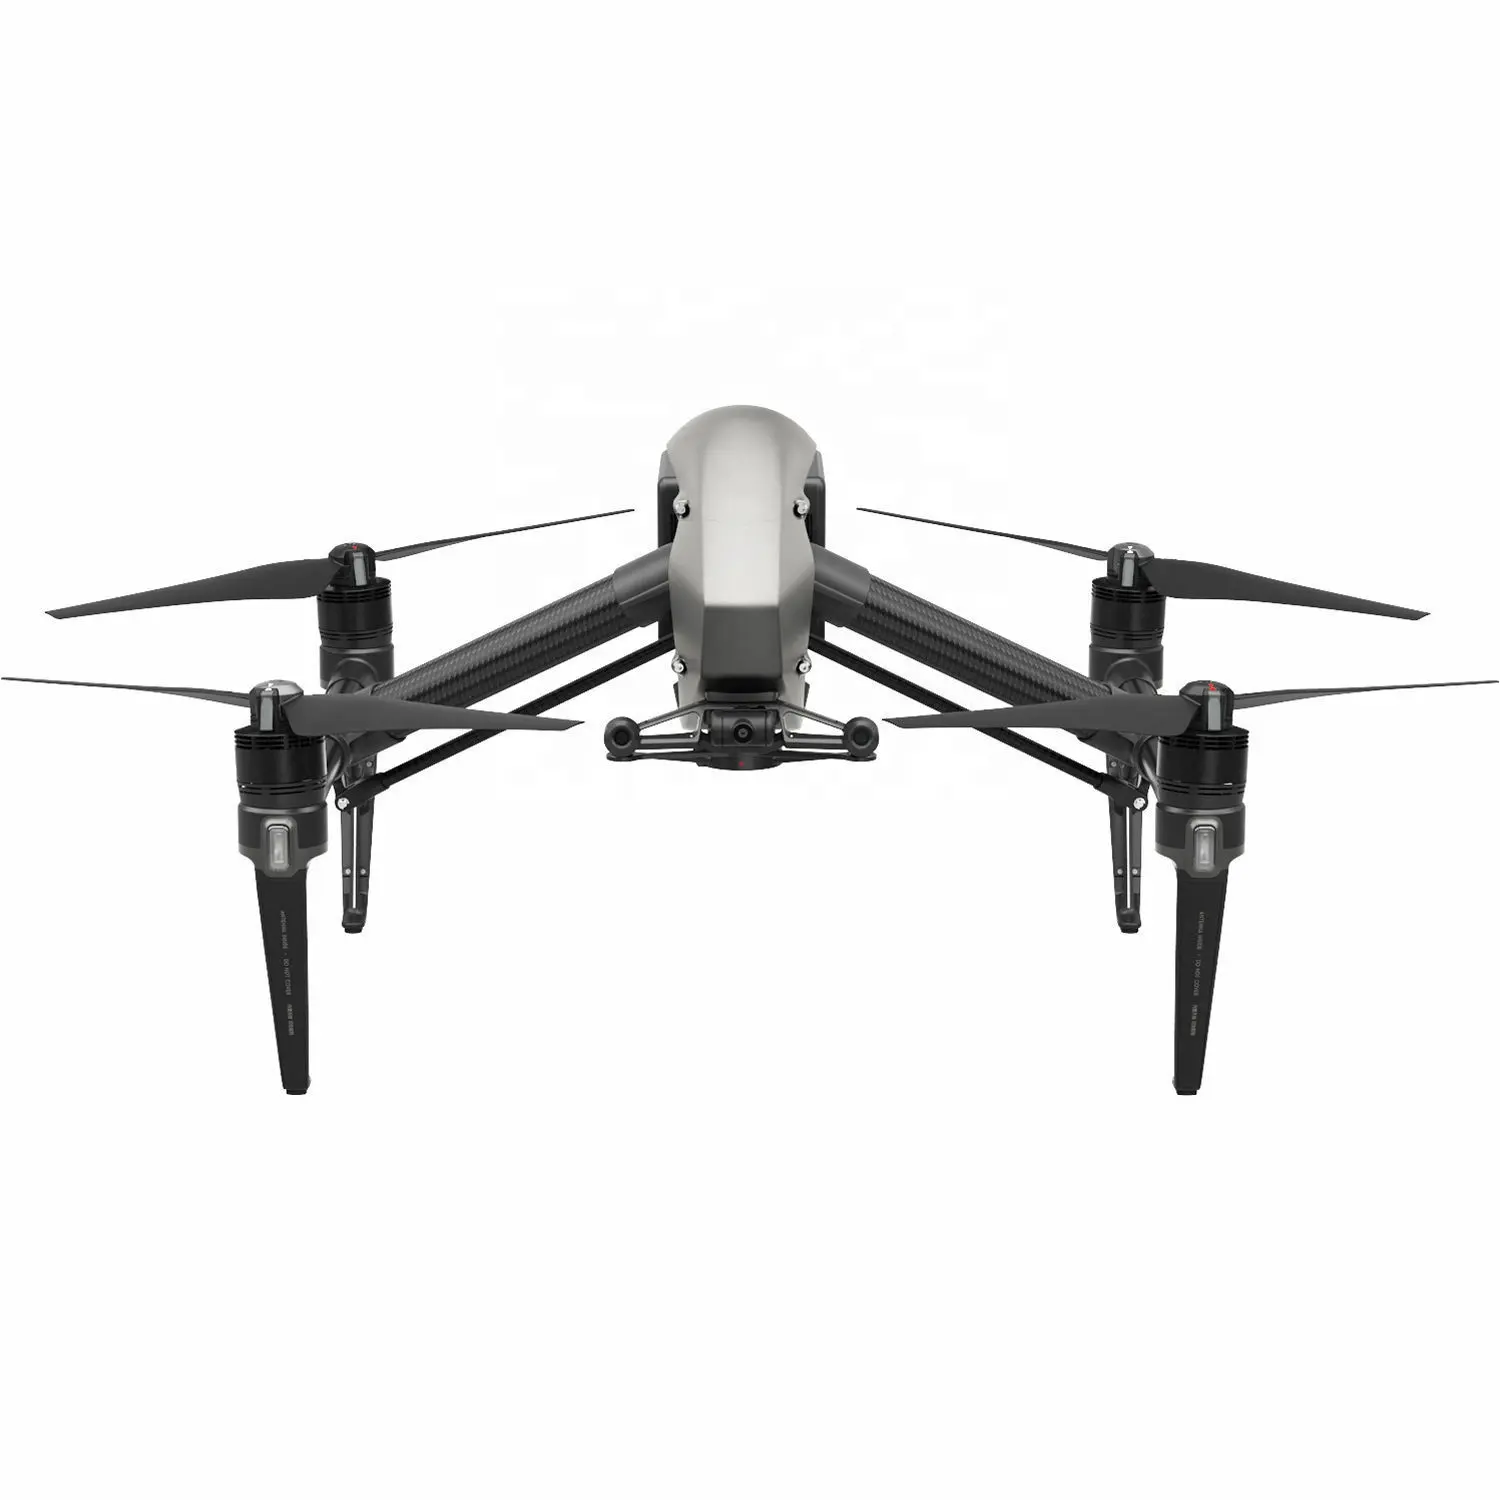 Drone Camera DJI INSPIRE 2 Mới Và Chính Hãng Với Zenmuse X5S 4K & 5.2K Video 20.8MP Ảnh Ống Kính 15Mm